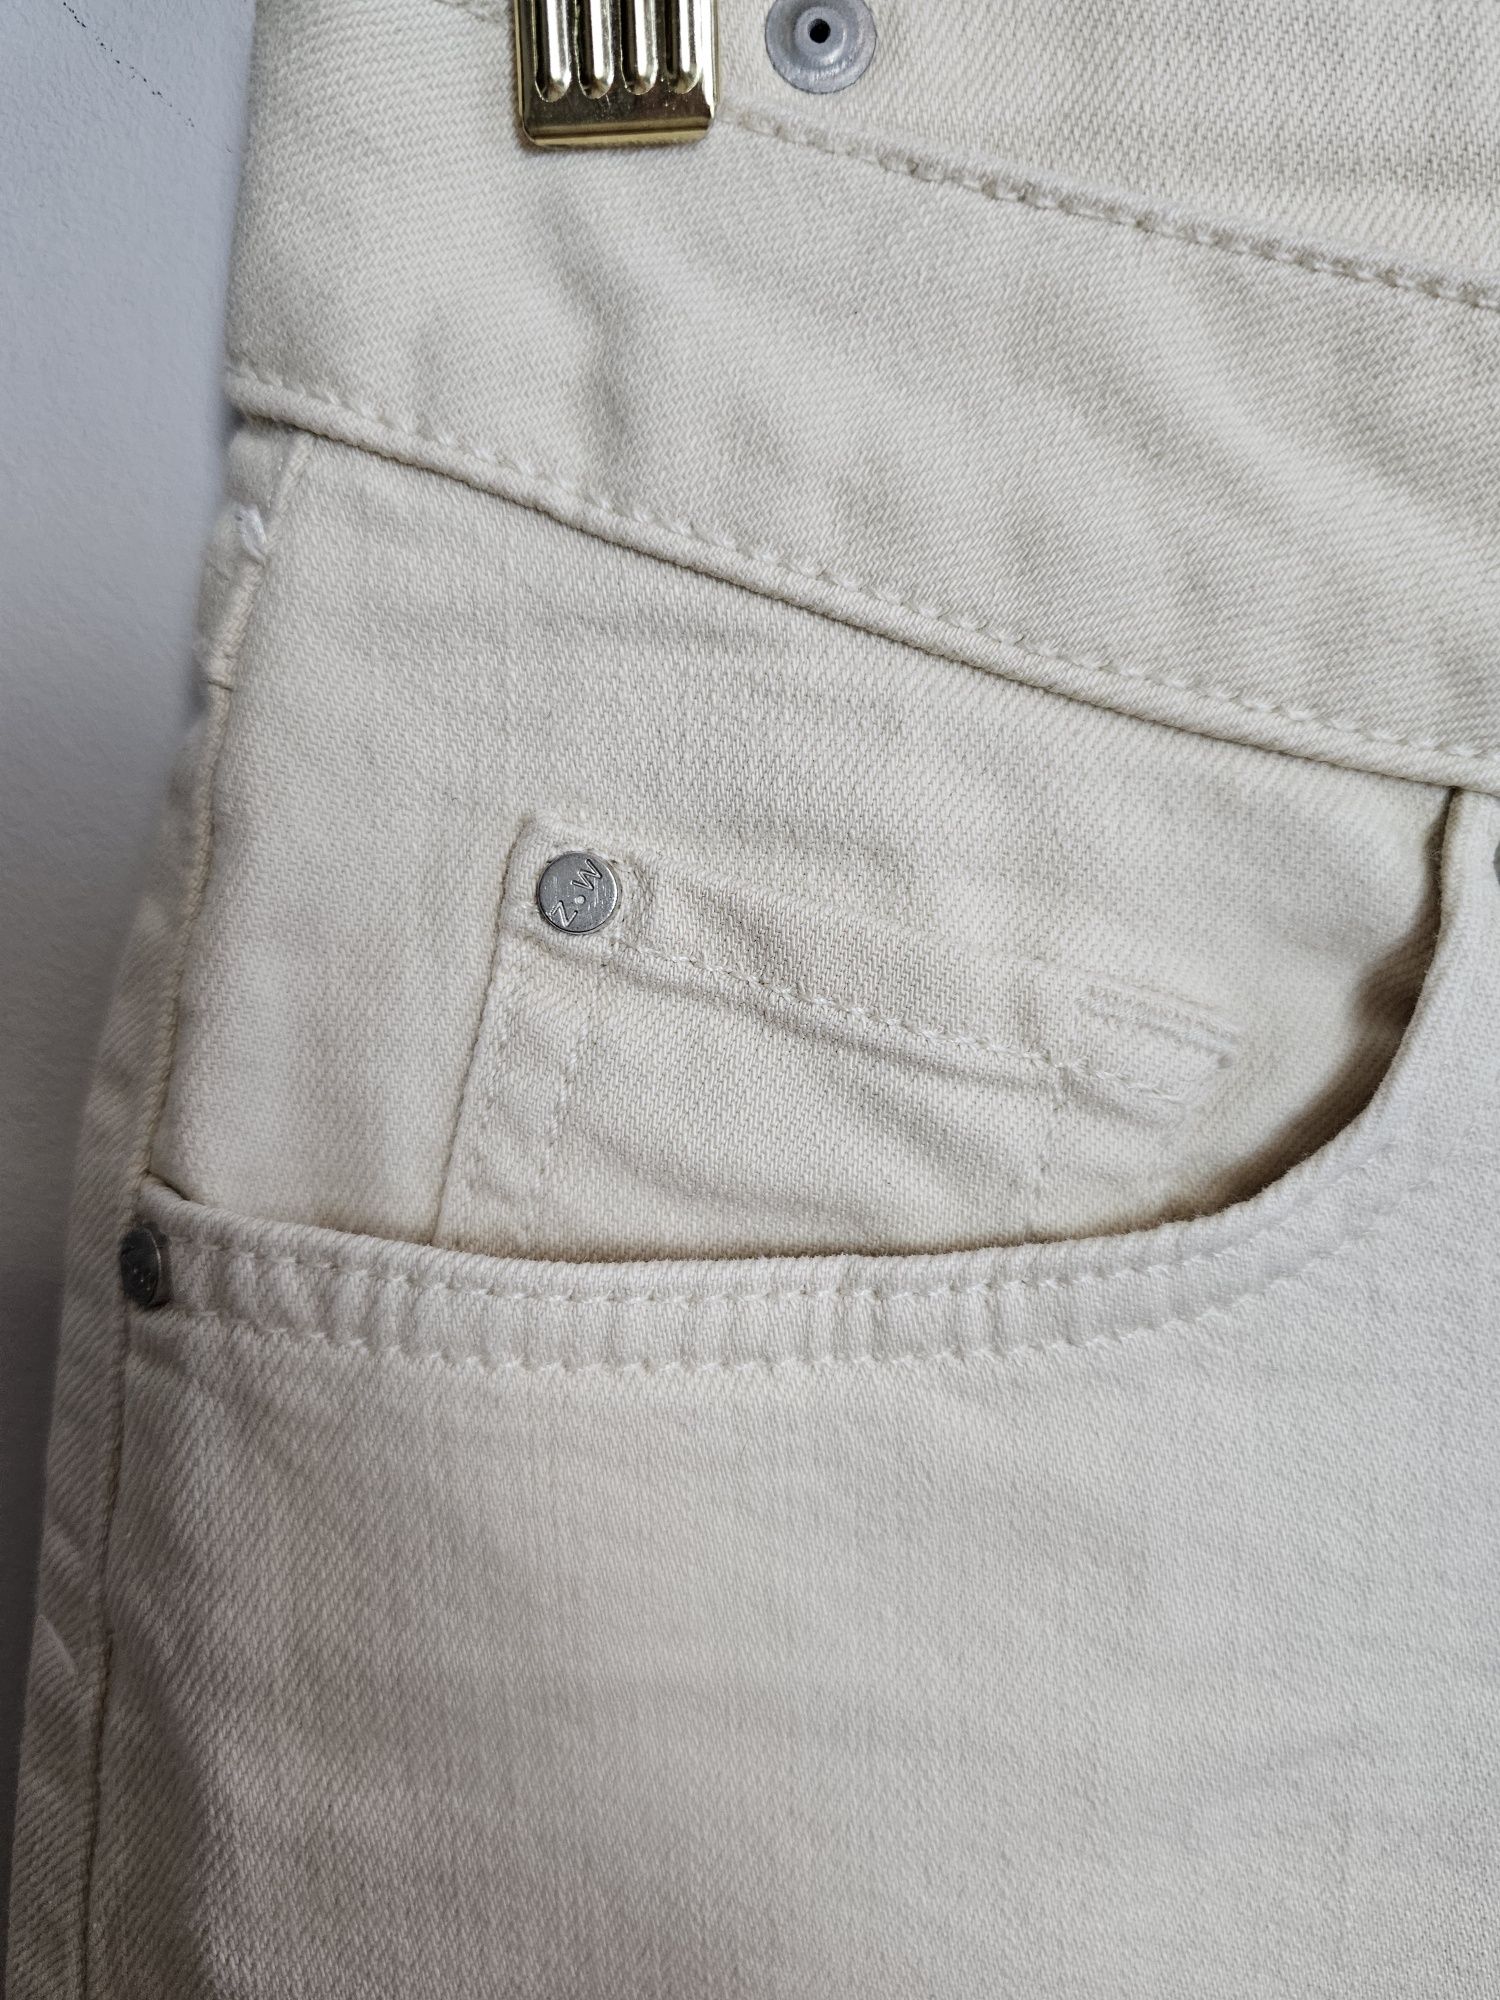 Spódnica jeansowa kremowa z zakładkami bawełna przed kolano